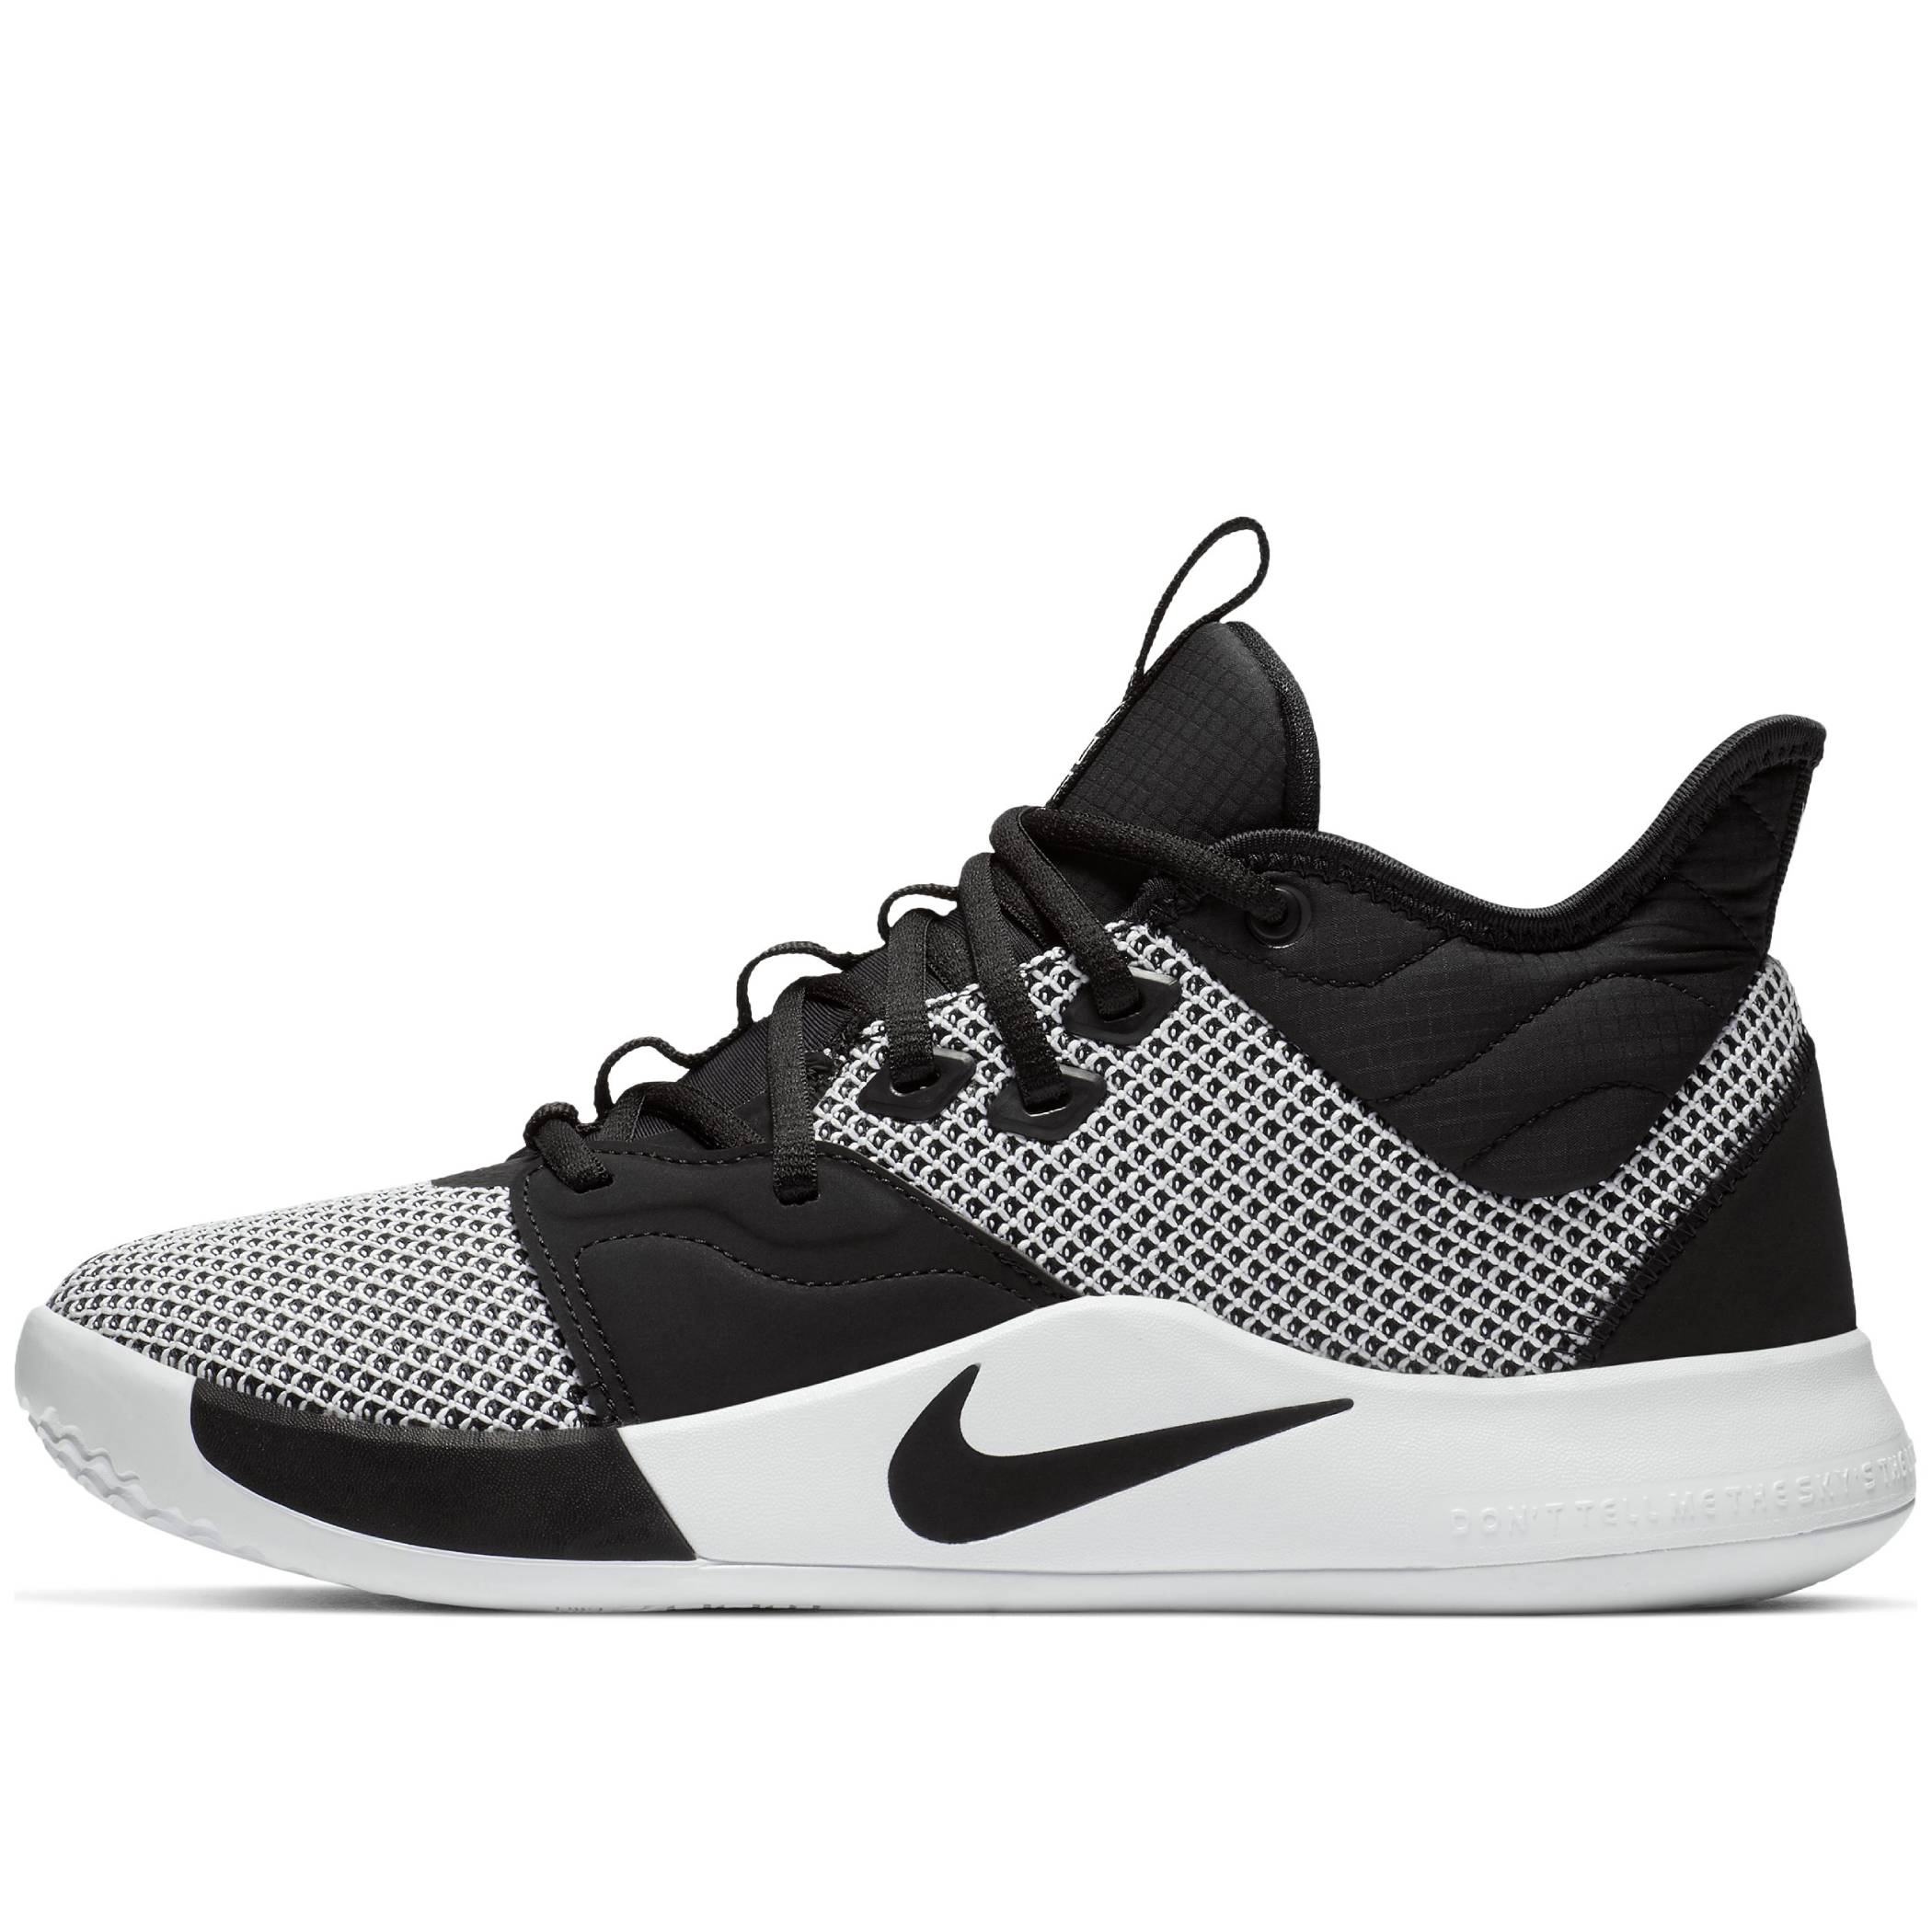 Nike PG 3 AO2607-002 Black/Black-White 